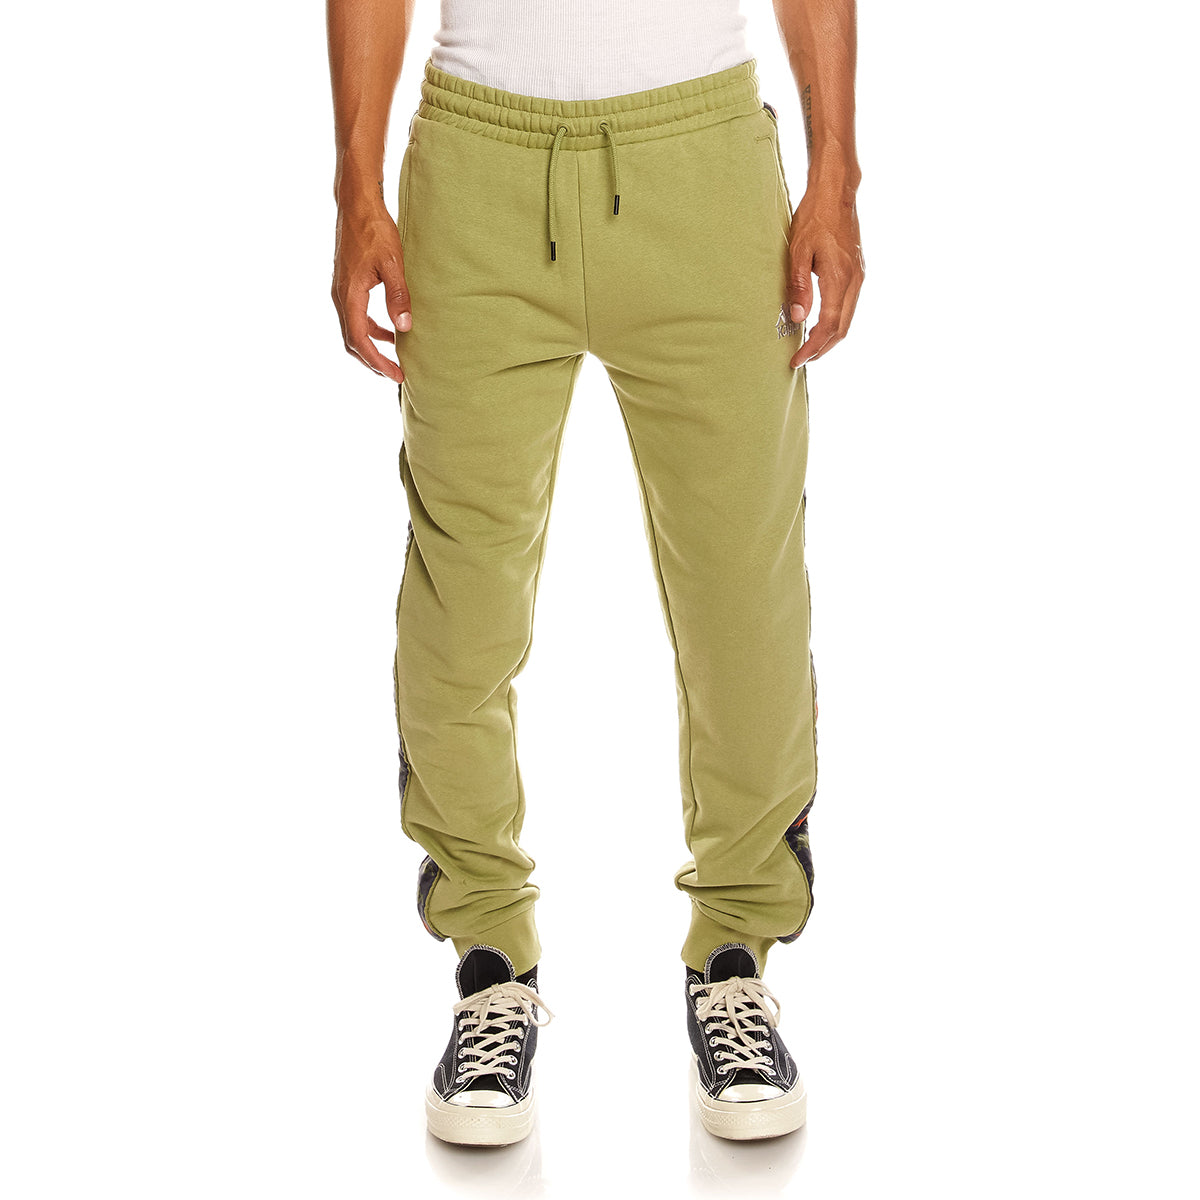 Pantalón Alanz verde hombre - imagen 1